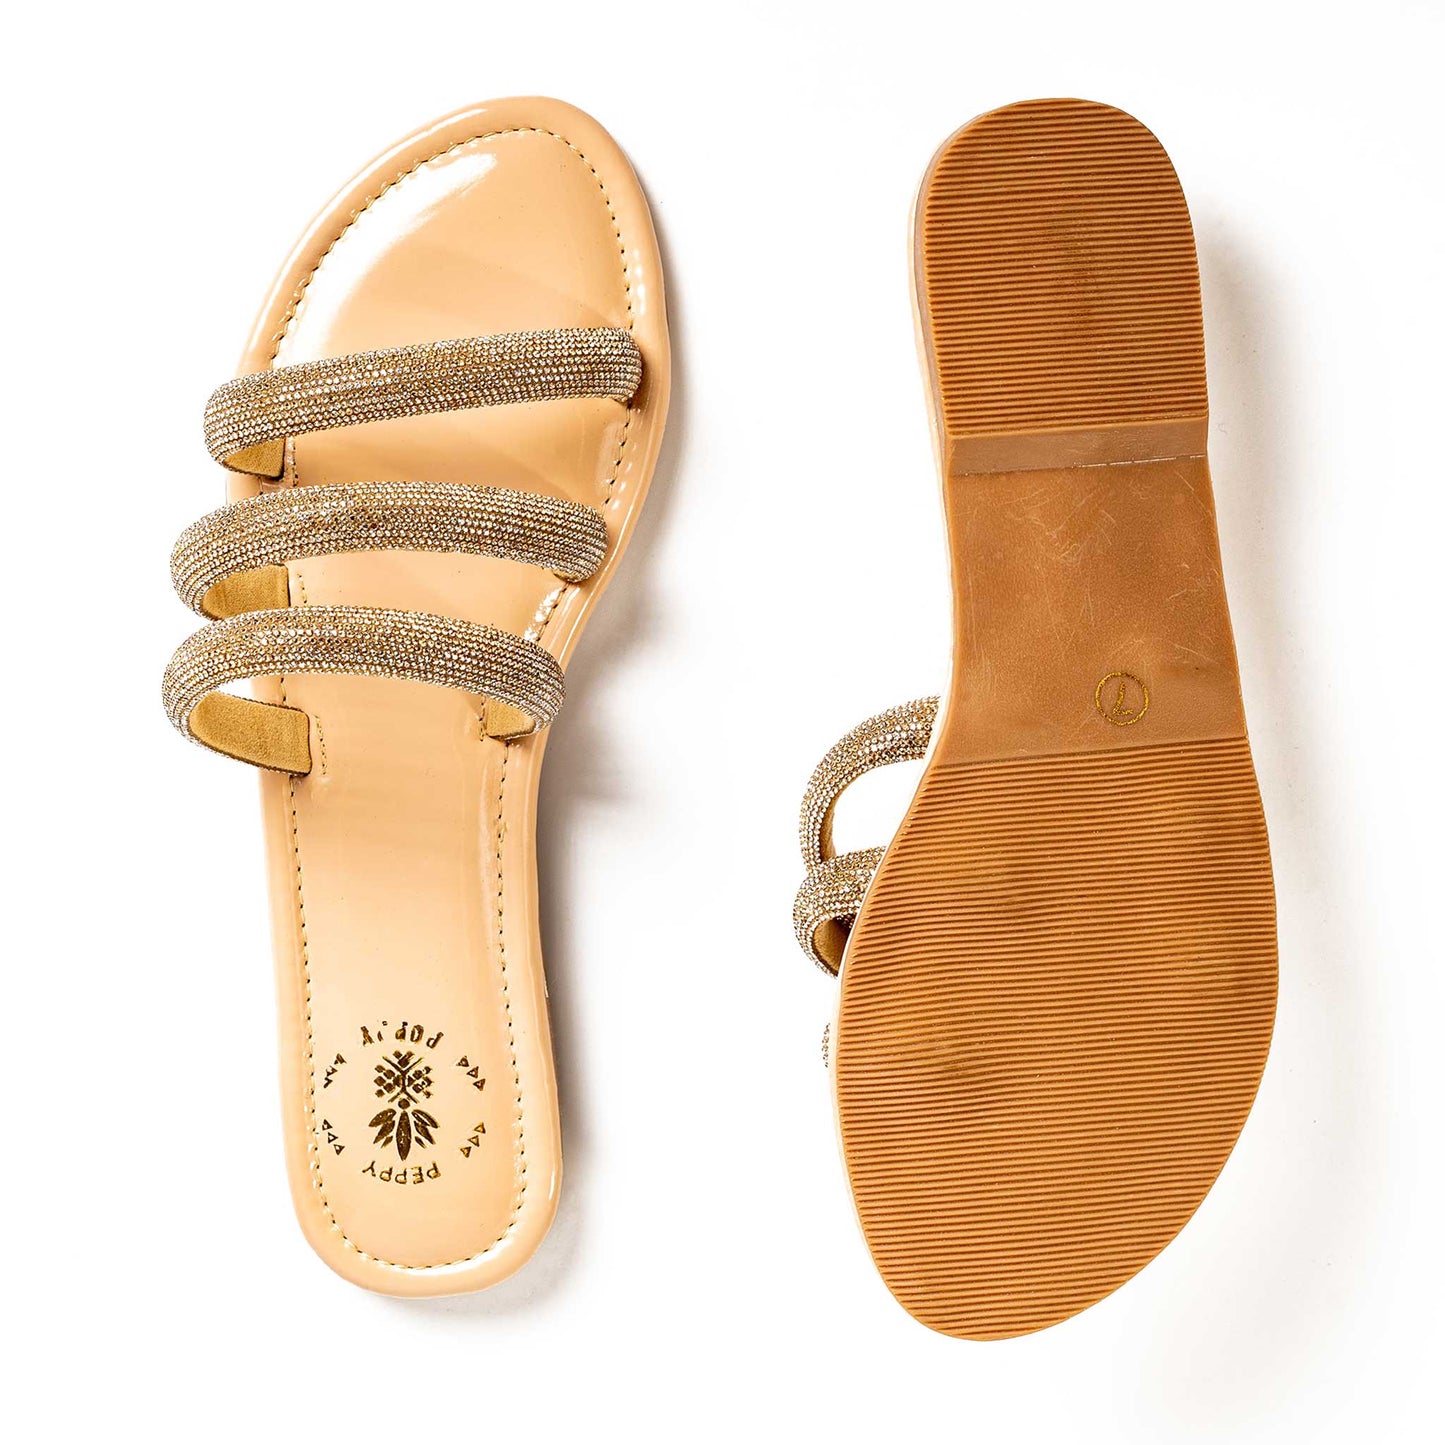 Classic Bling Sandals – Cream